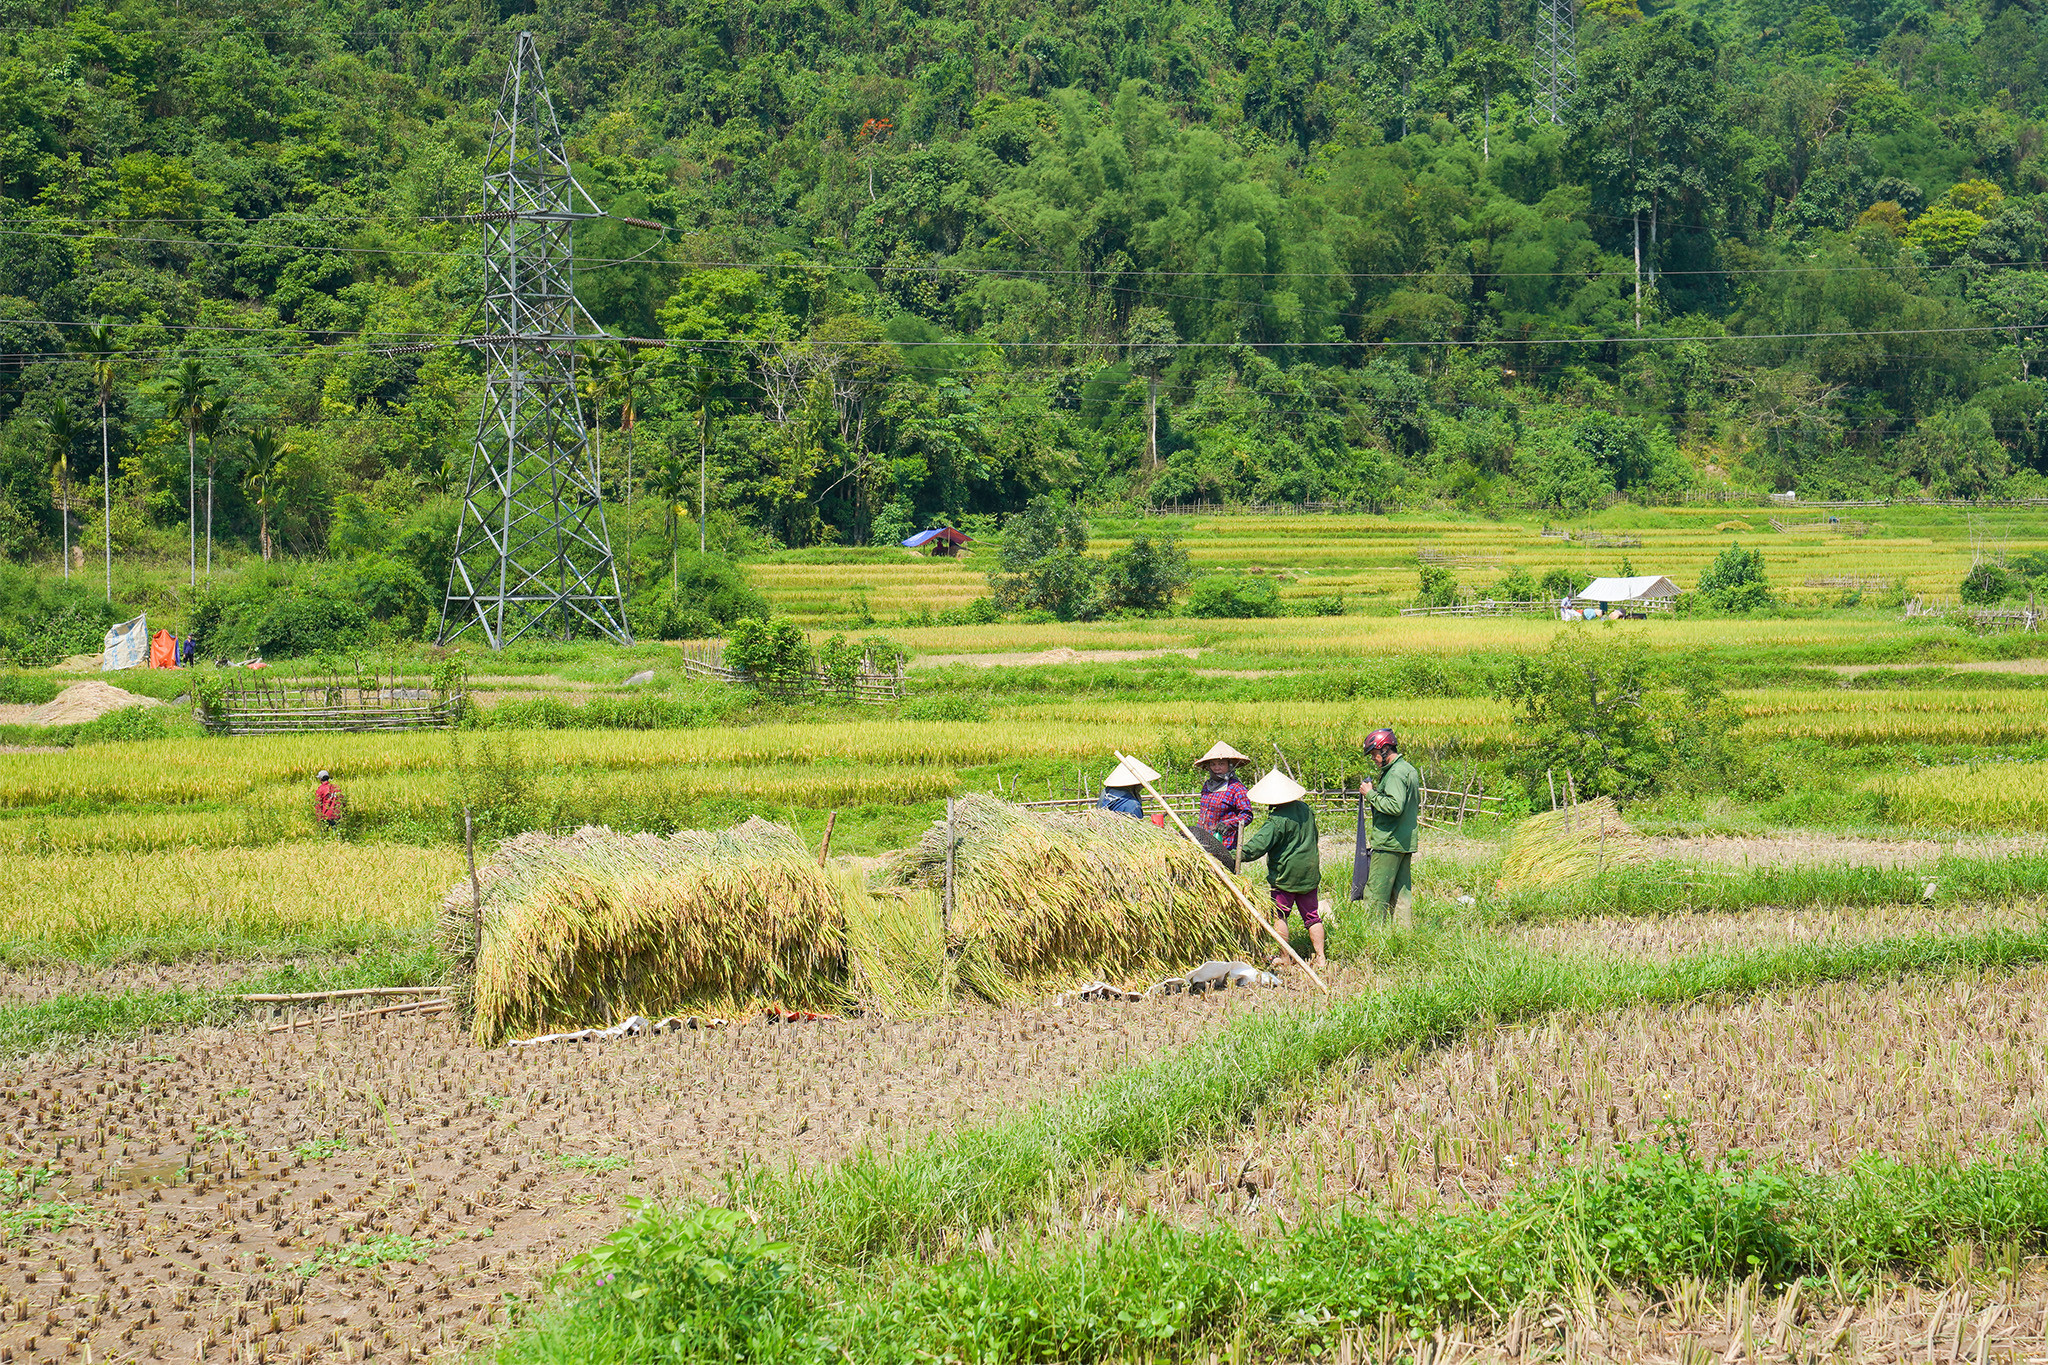 Lúa được cắt và tập kết ngay tại ruộng trước khi đưa về nhà